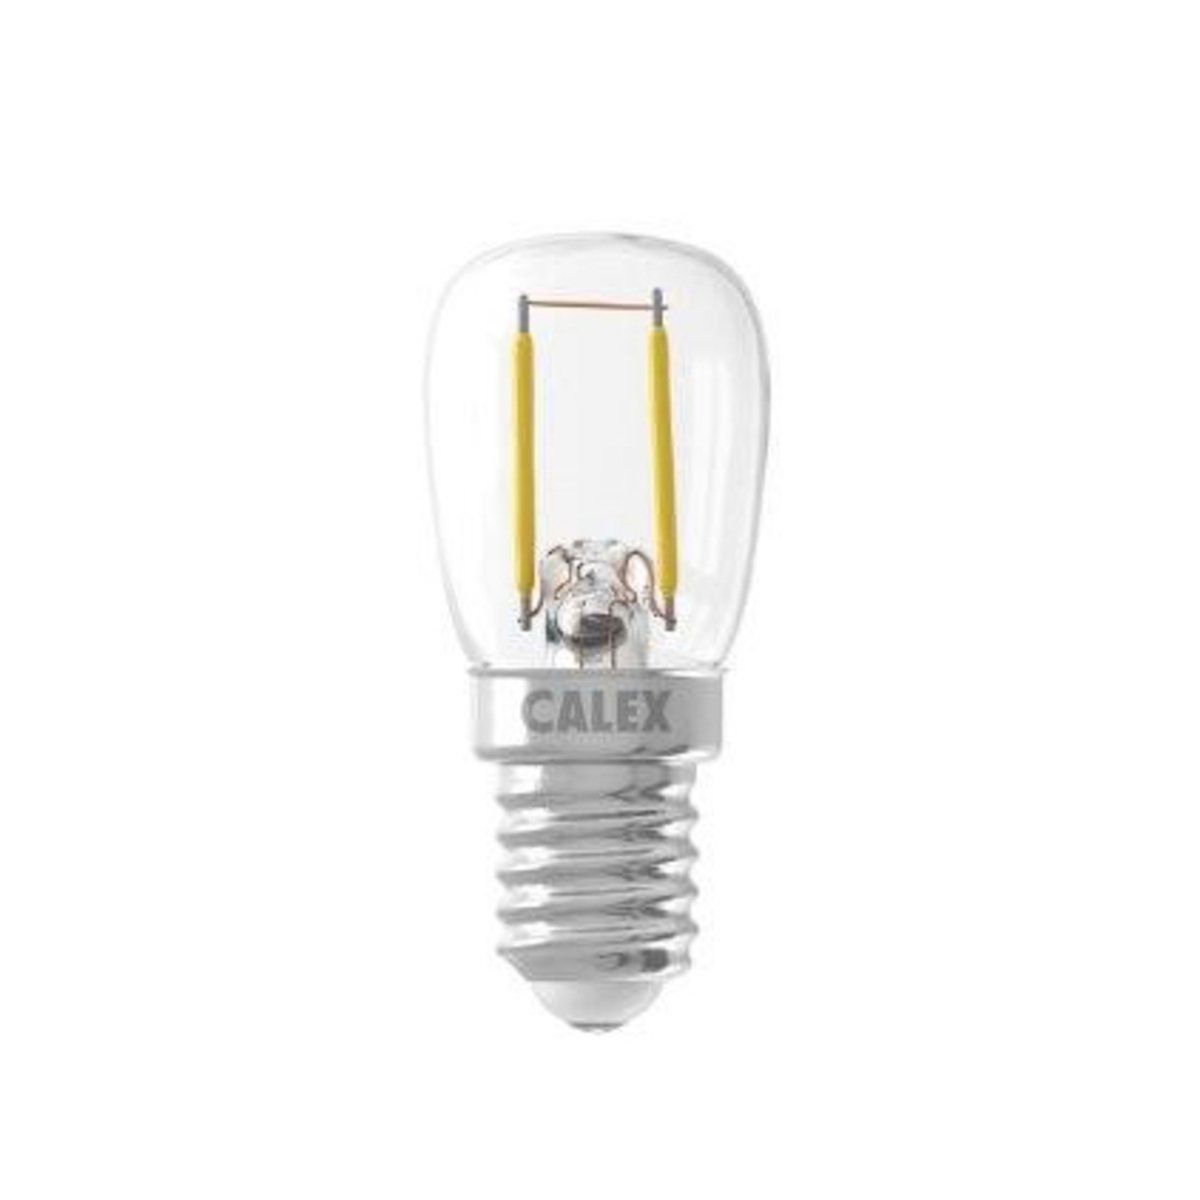 Ampoule industrielle transparente E14/7W